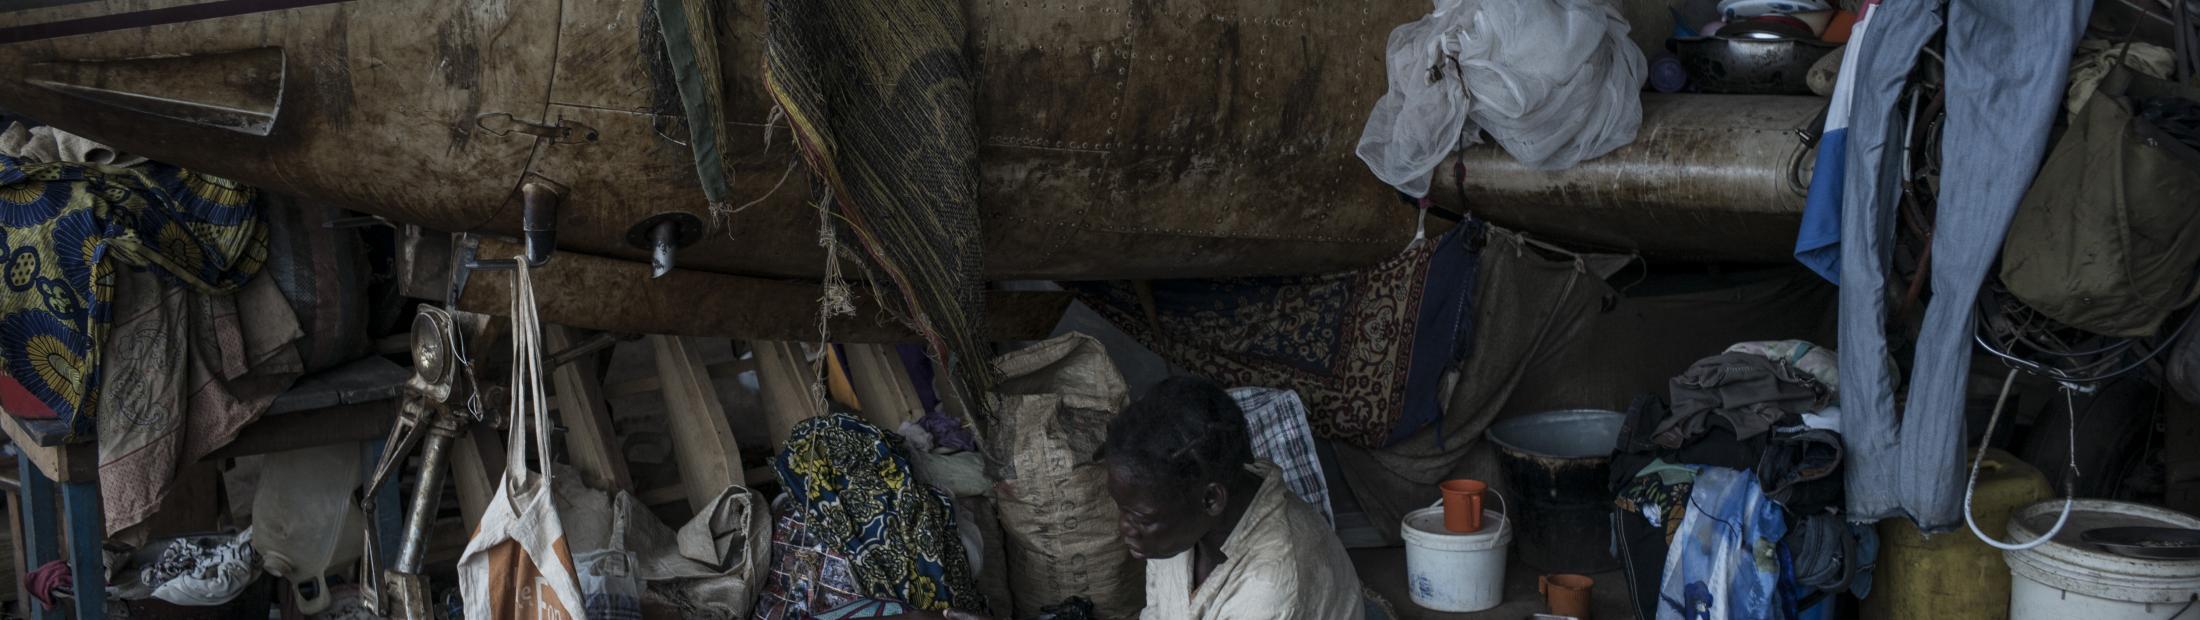 Luchas entre ex seleka y anti balaka afectan a miles de personas en la República Centroafricana